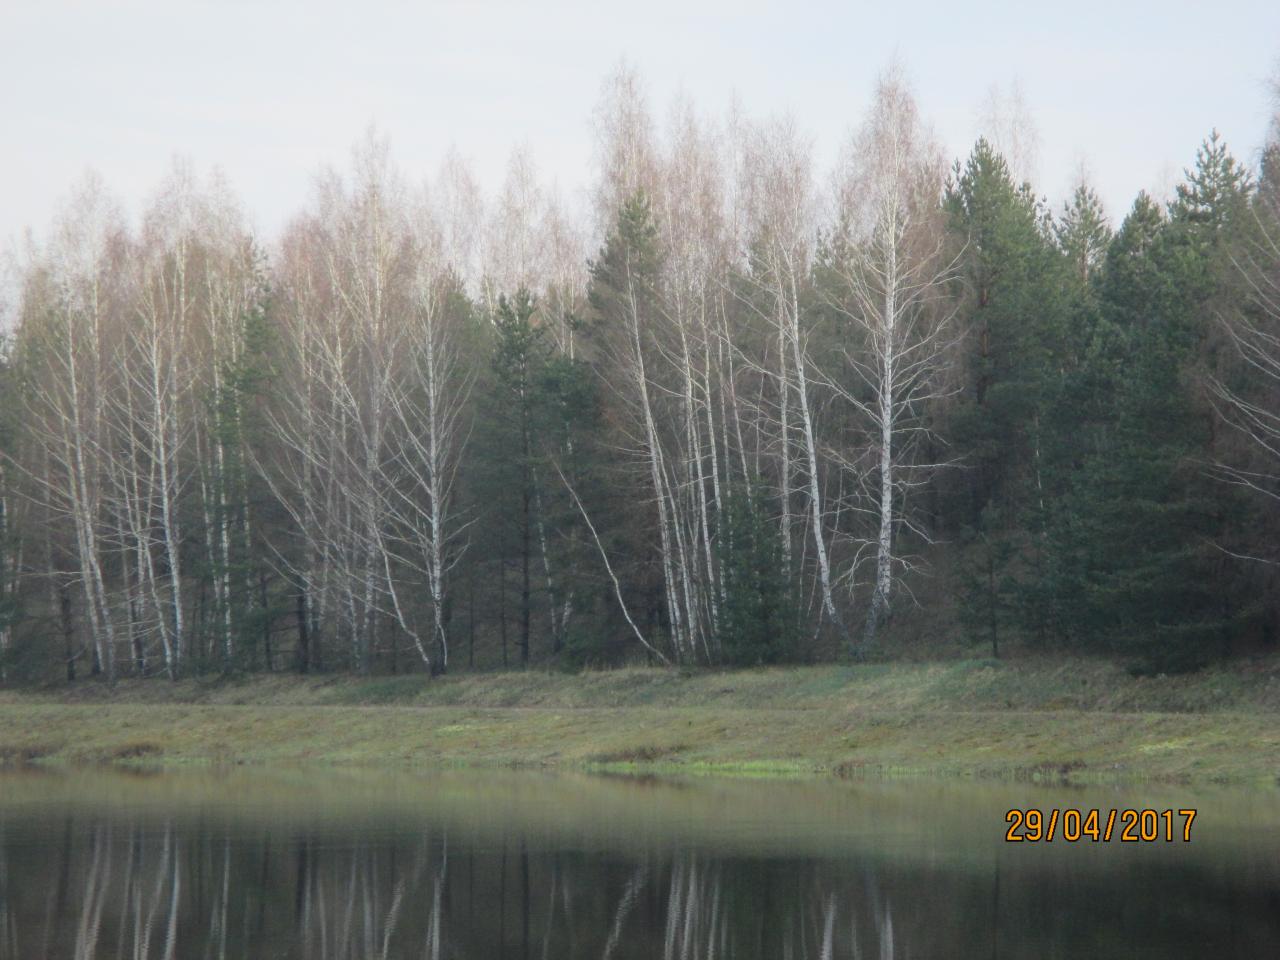  Как всегда долгожданная суббота, и конечно очередная вылазка ... | Отчеты о рыбалке в Беларуси